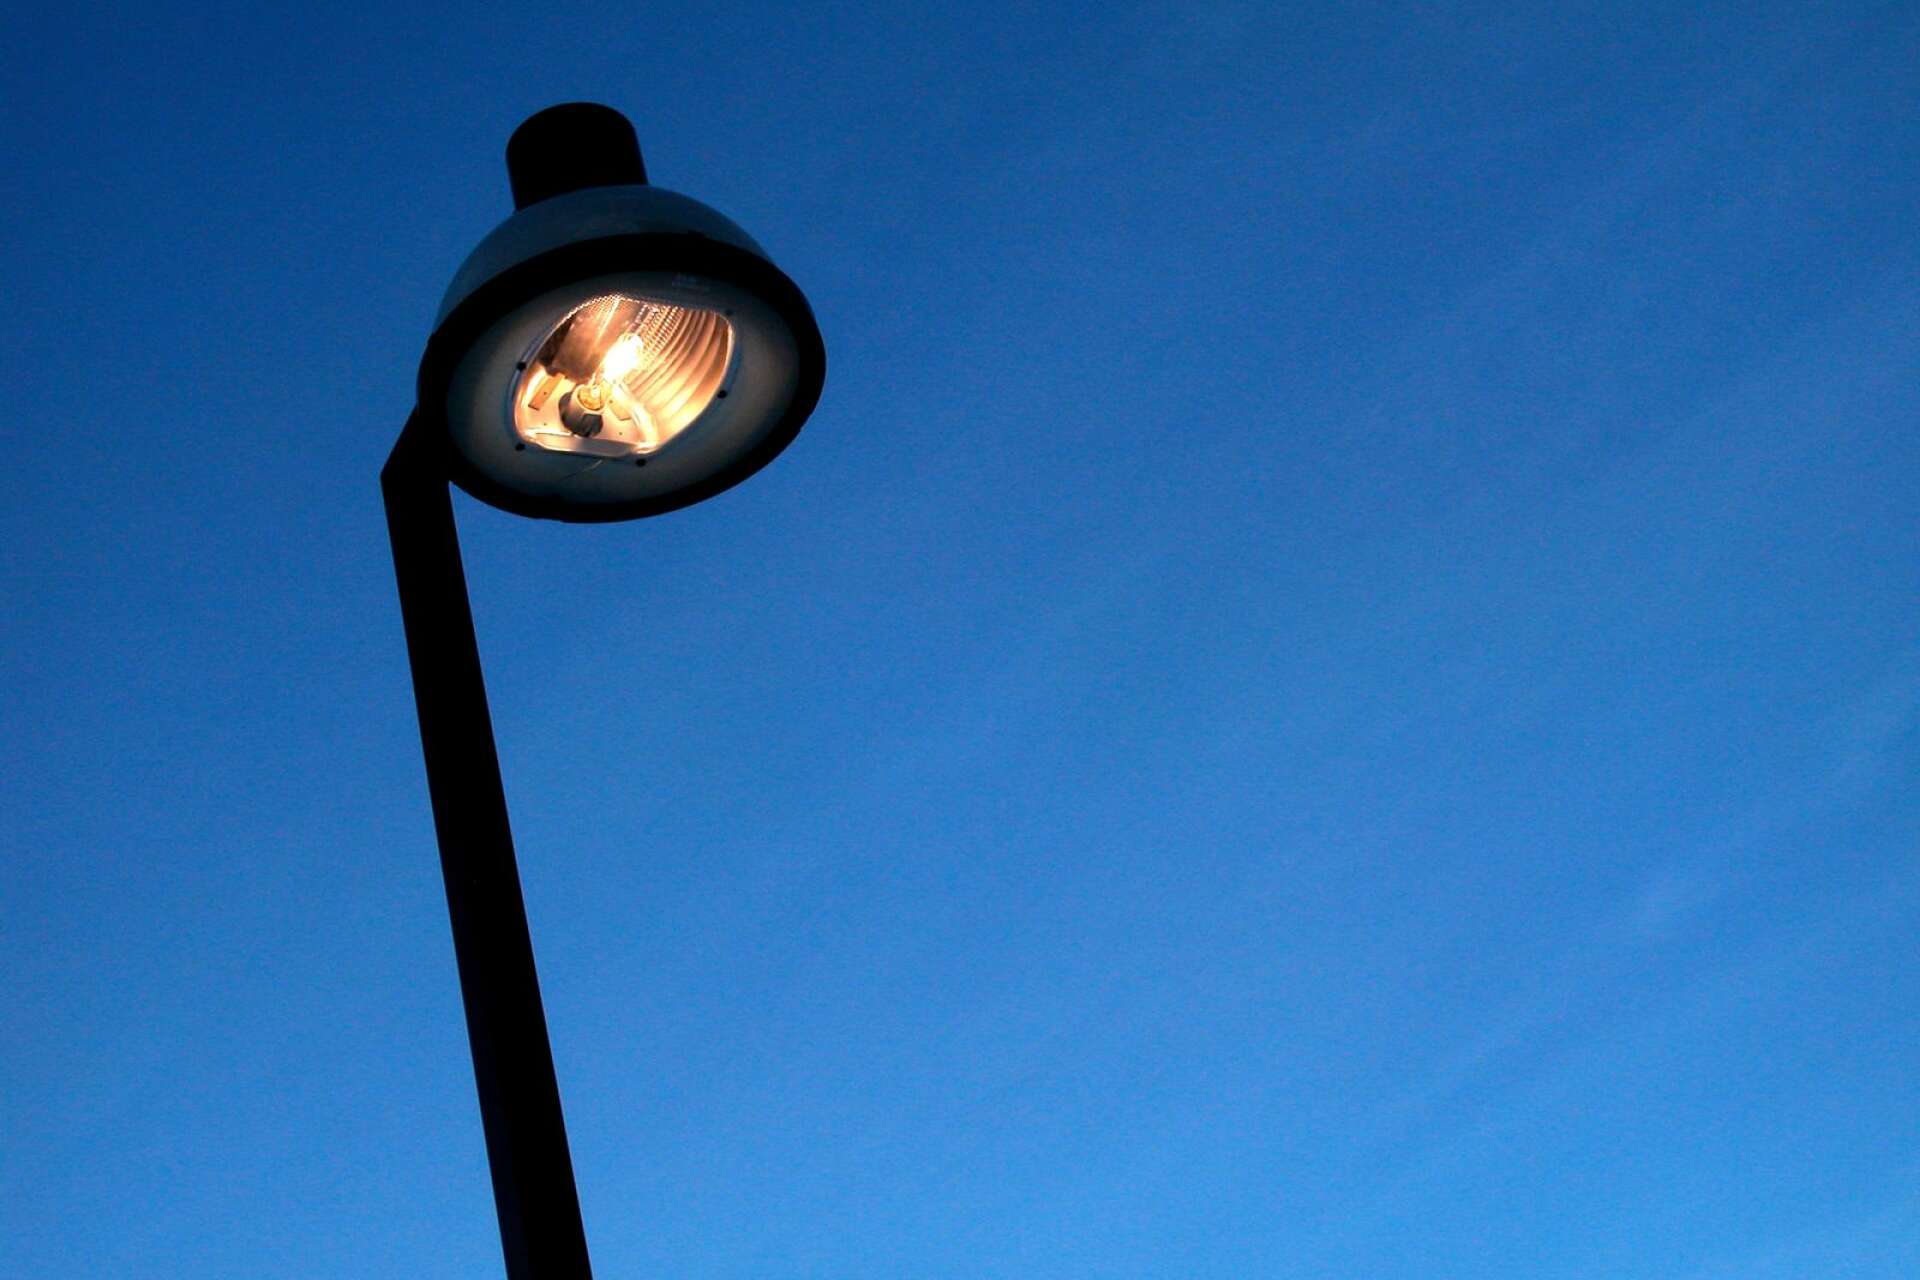 Karlstads kommun ska prova att sänka den offentliga belysningen lite vissa tider på dygnet. Många kommuner byter också ut lamporna till mer energisnåla varianter.